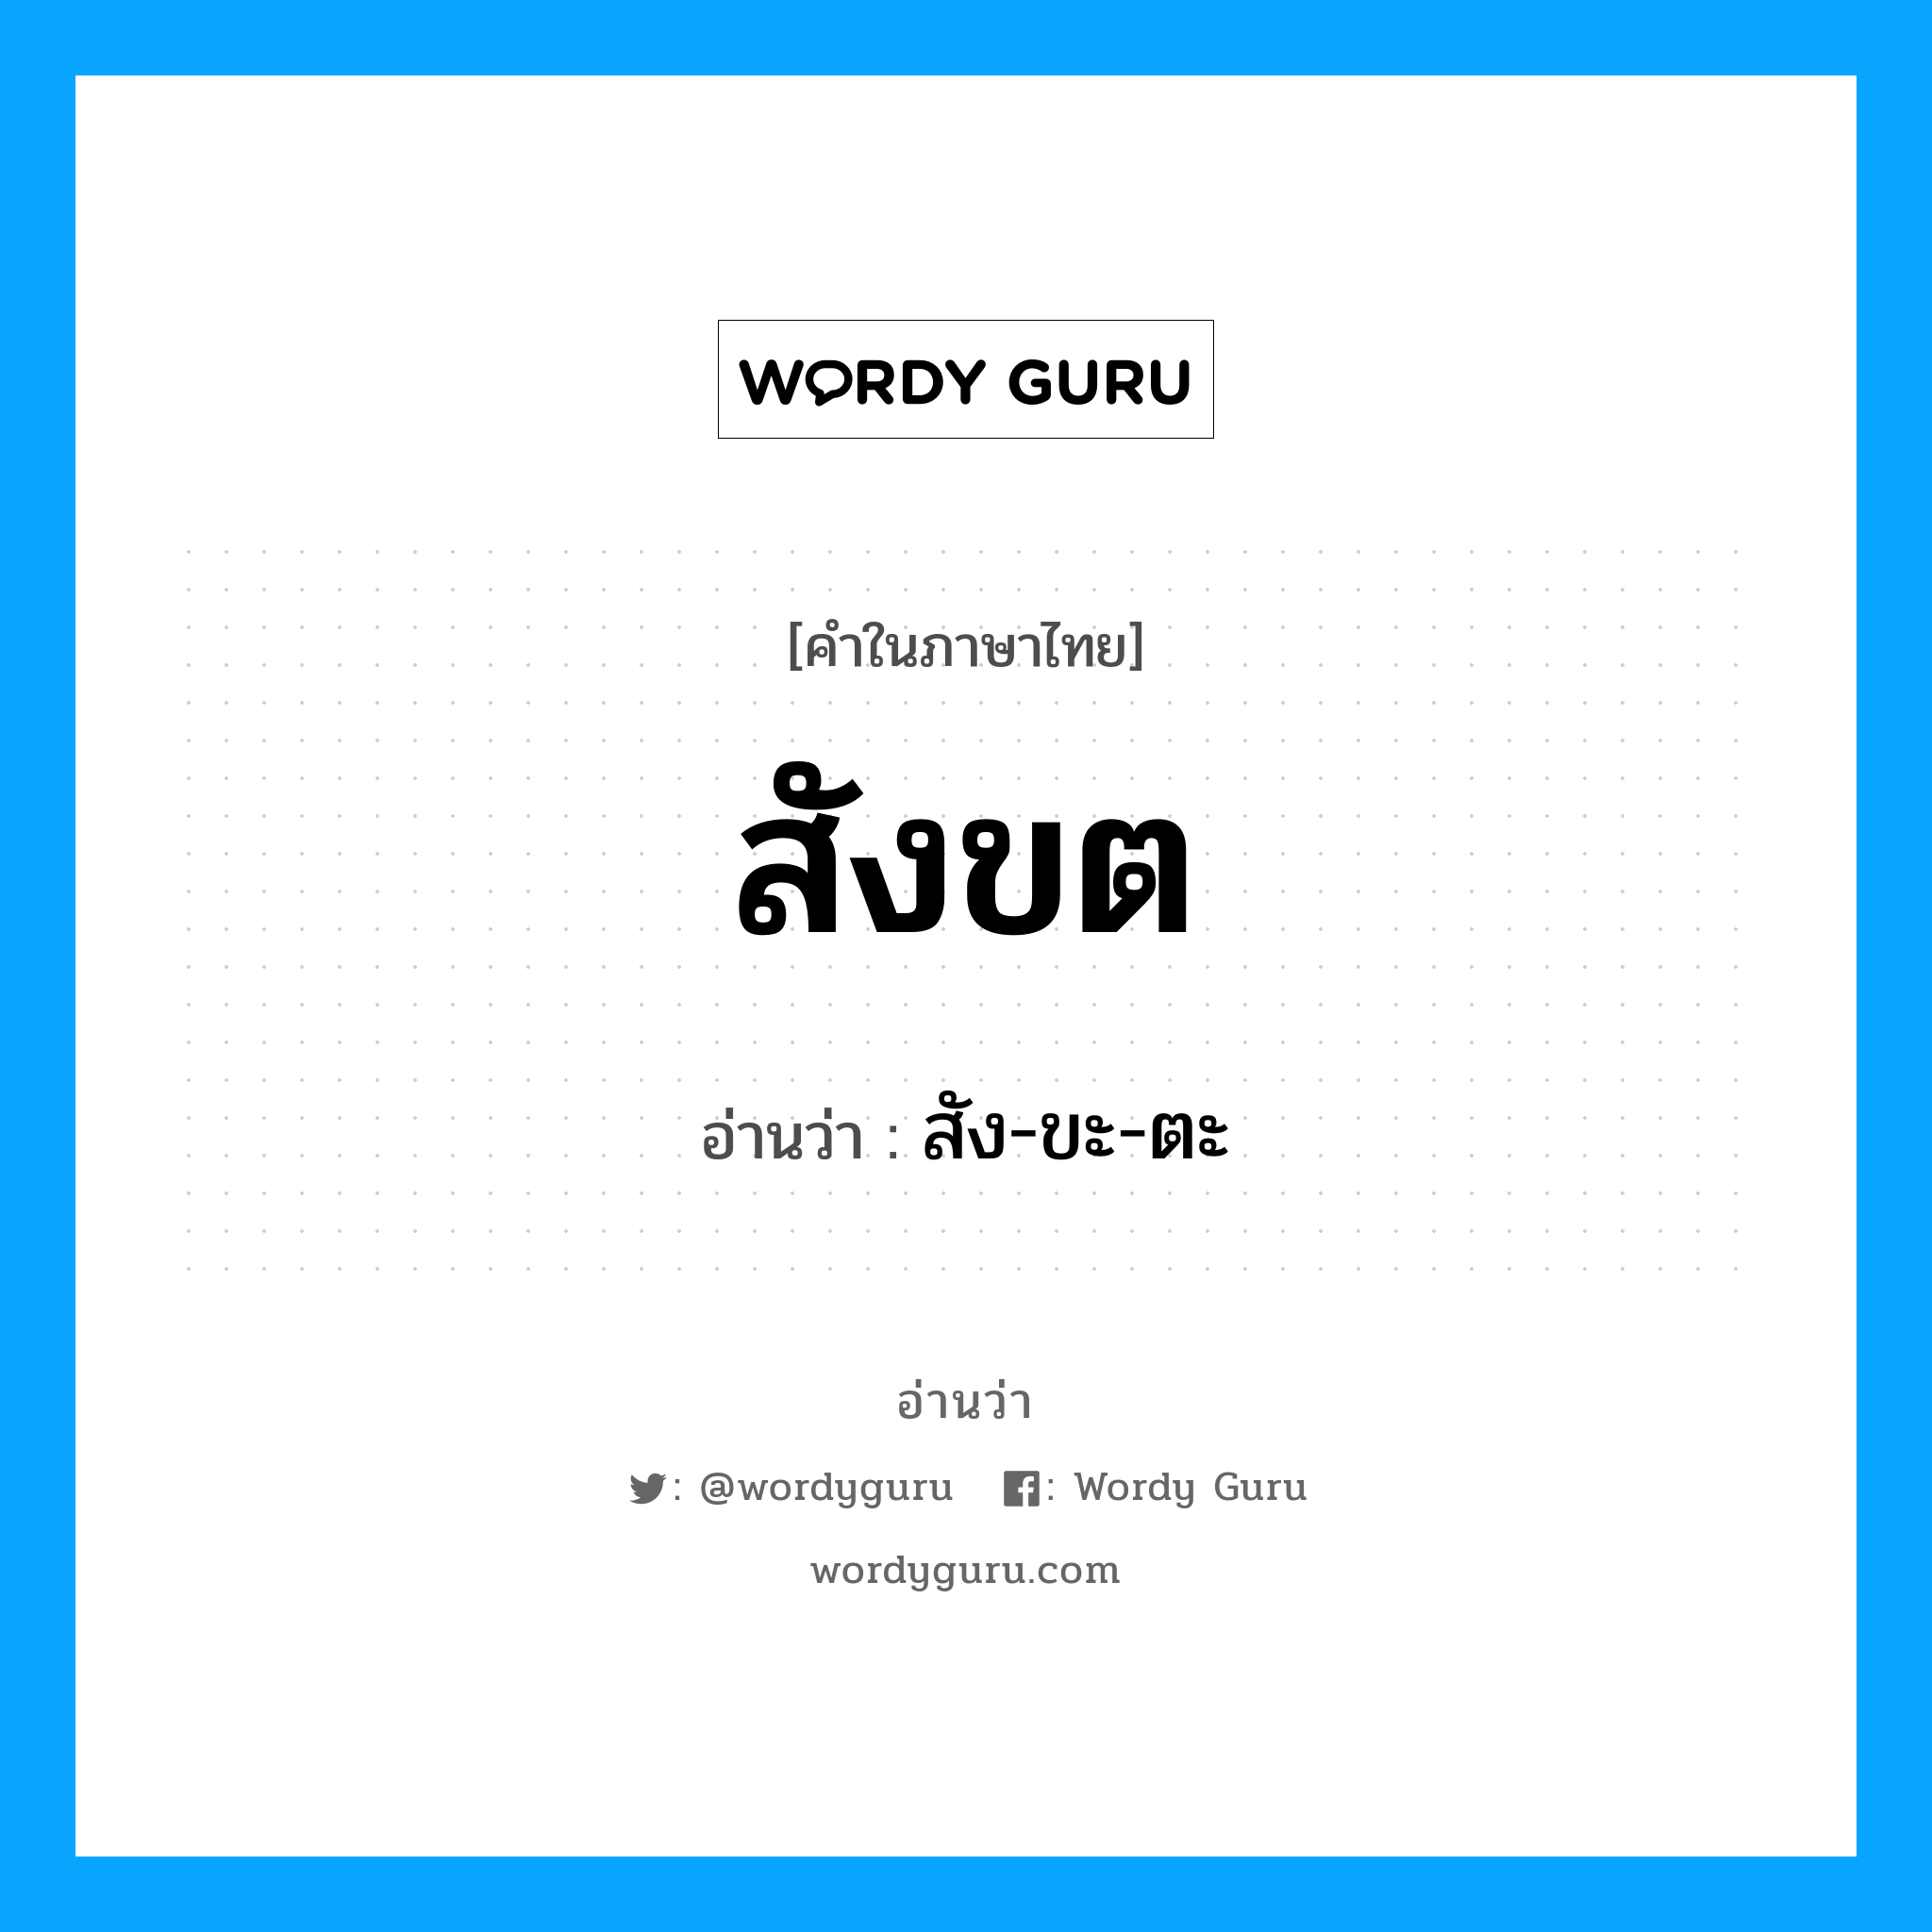 สัง-ขะ-ตะ เป็นคำอ่านของคำไหน?, คำในภาษาไทย สัง-ขะ-ตะ อ่านว่า สังขต